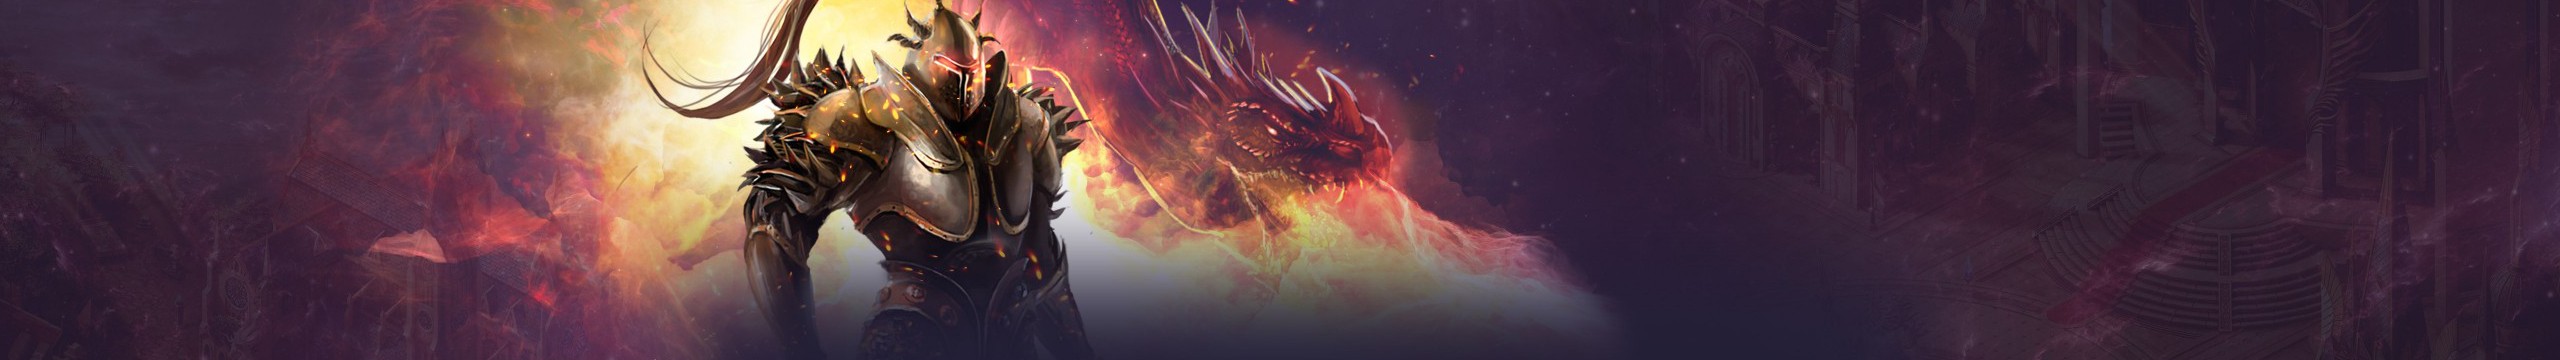 blood dragon download free